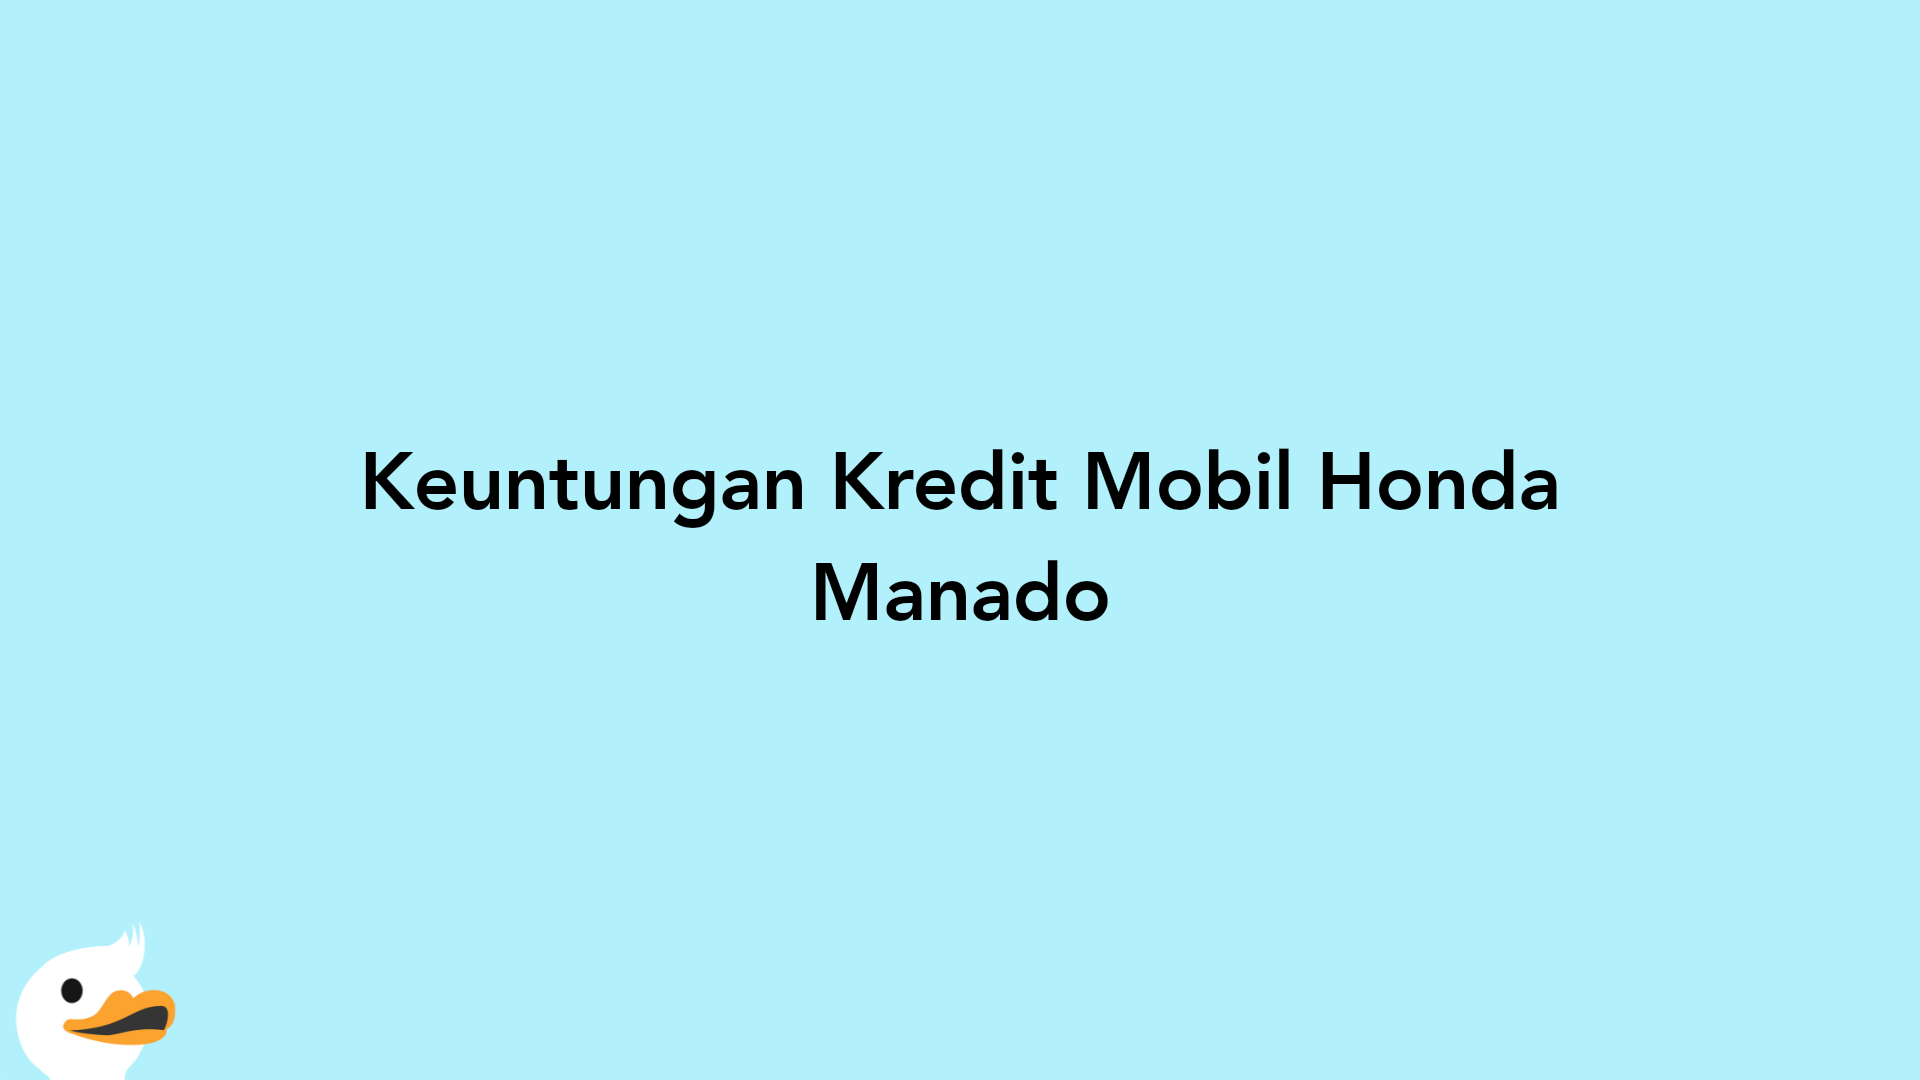 Keuntungan Kredit Mobil Honda Manado